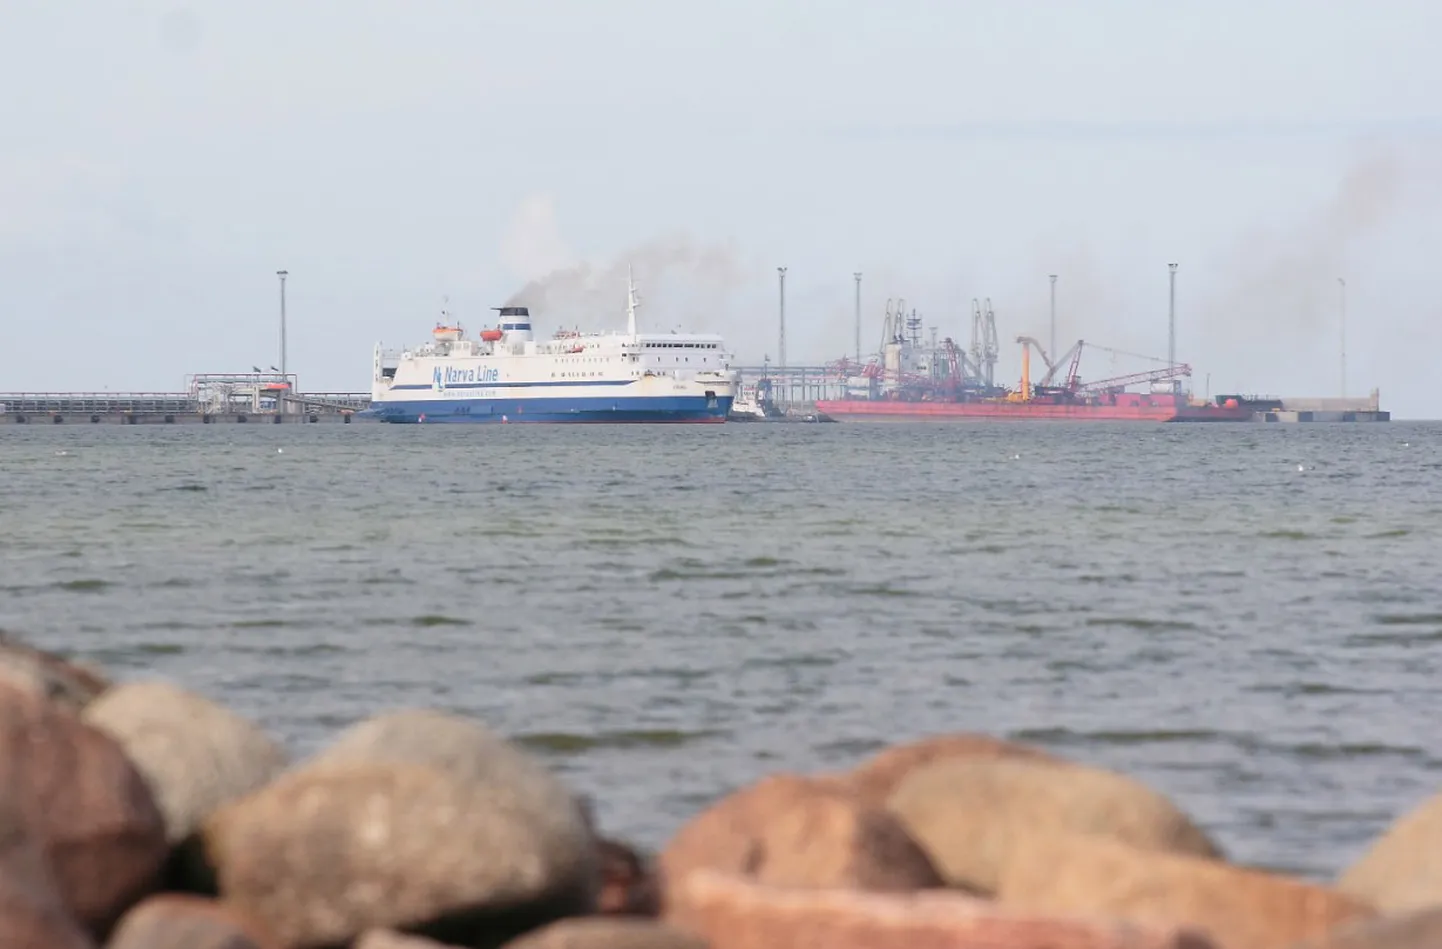 Судоходное сообщение между Силламяэ и Котка действовало до осени 2007 года, тогда на линии курсировало судно "Vironia" Сааремааской судоходной компании.